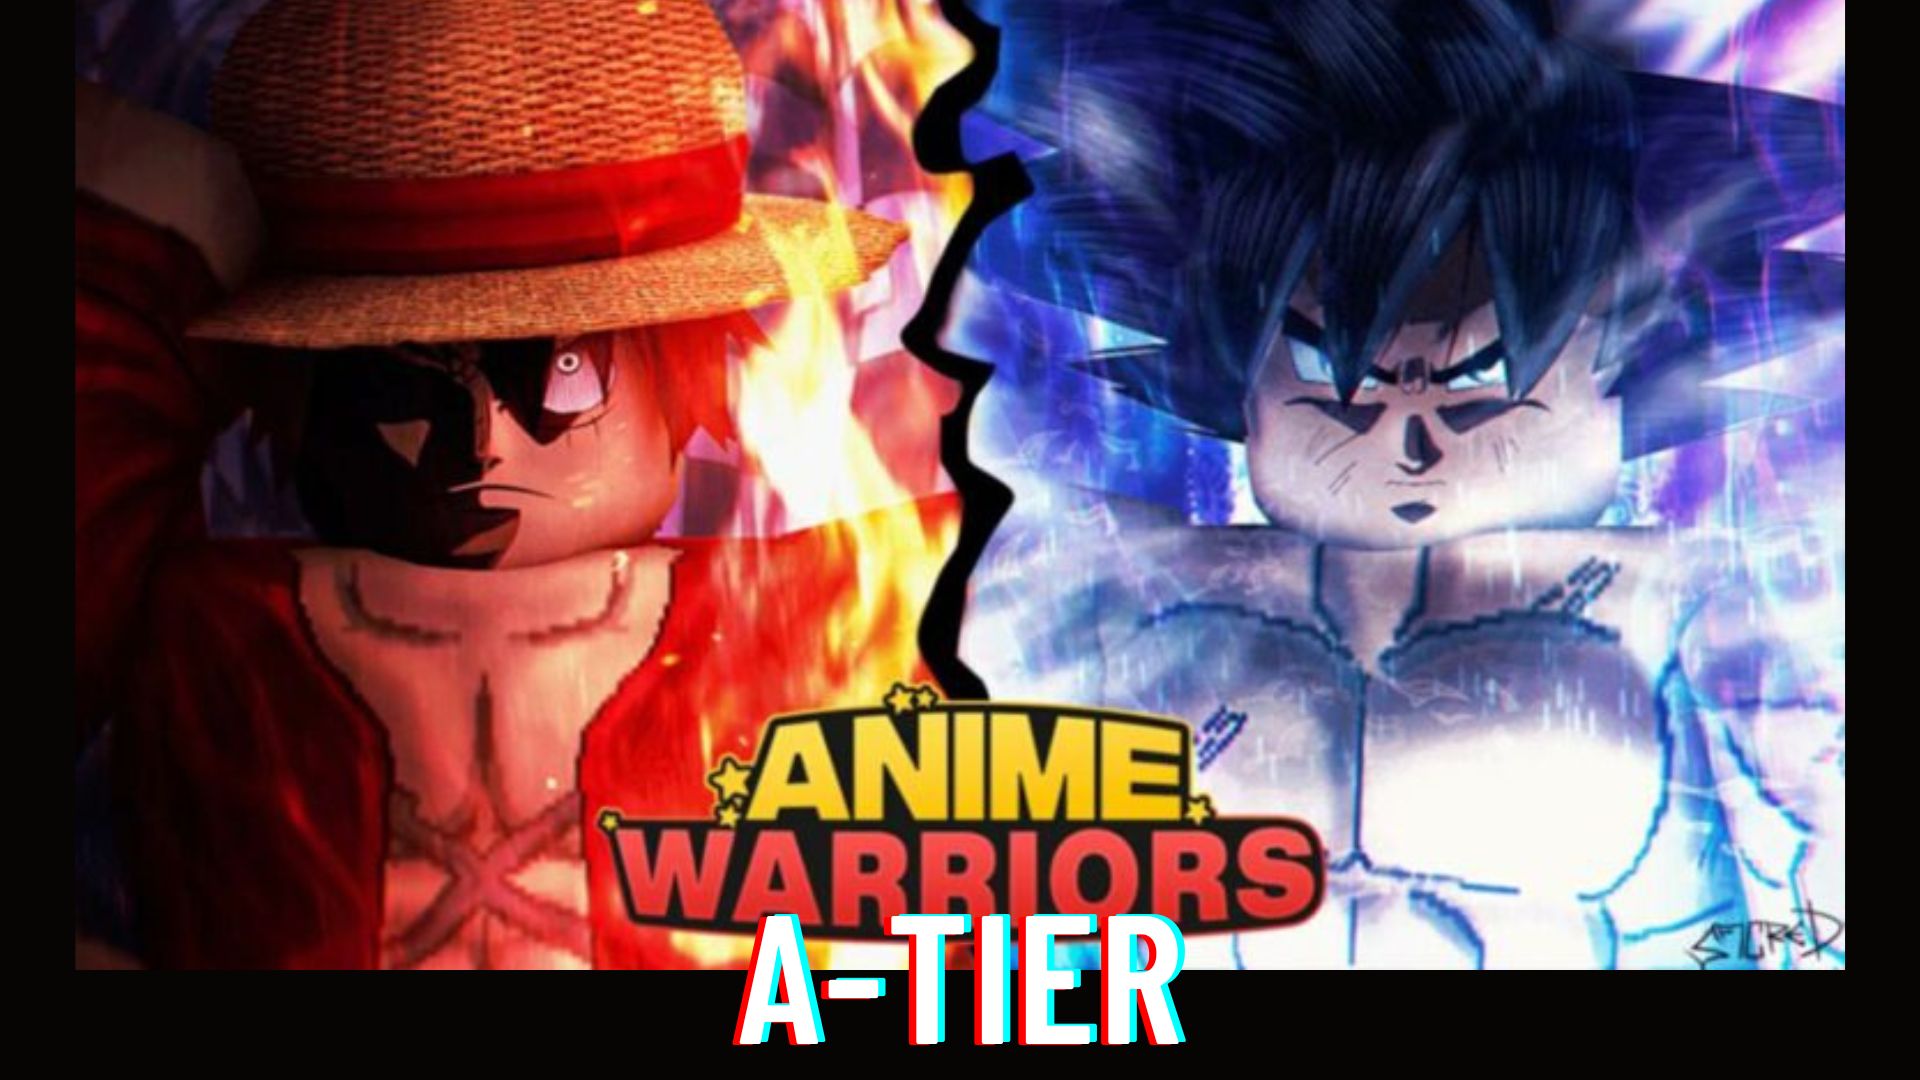 Anime warriors A